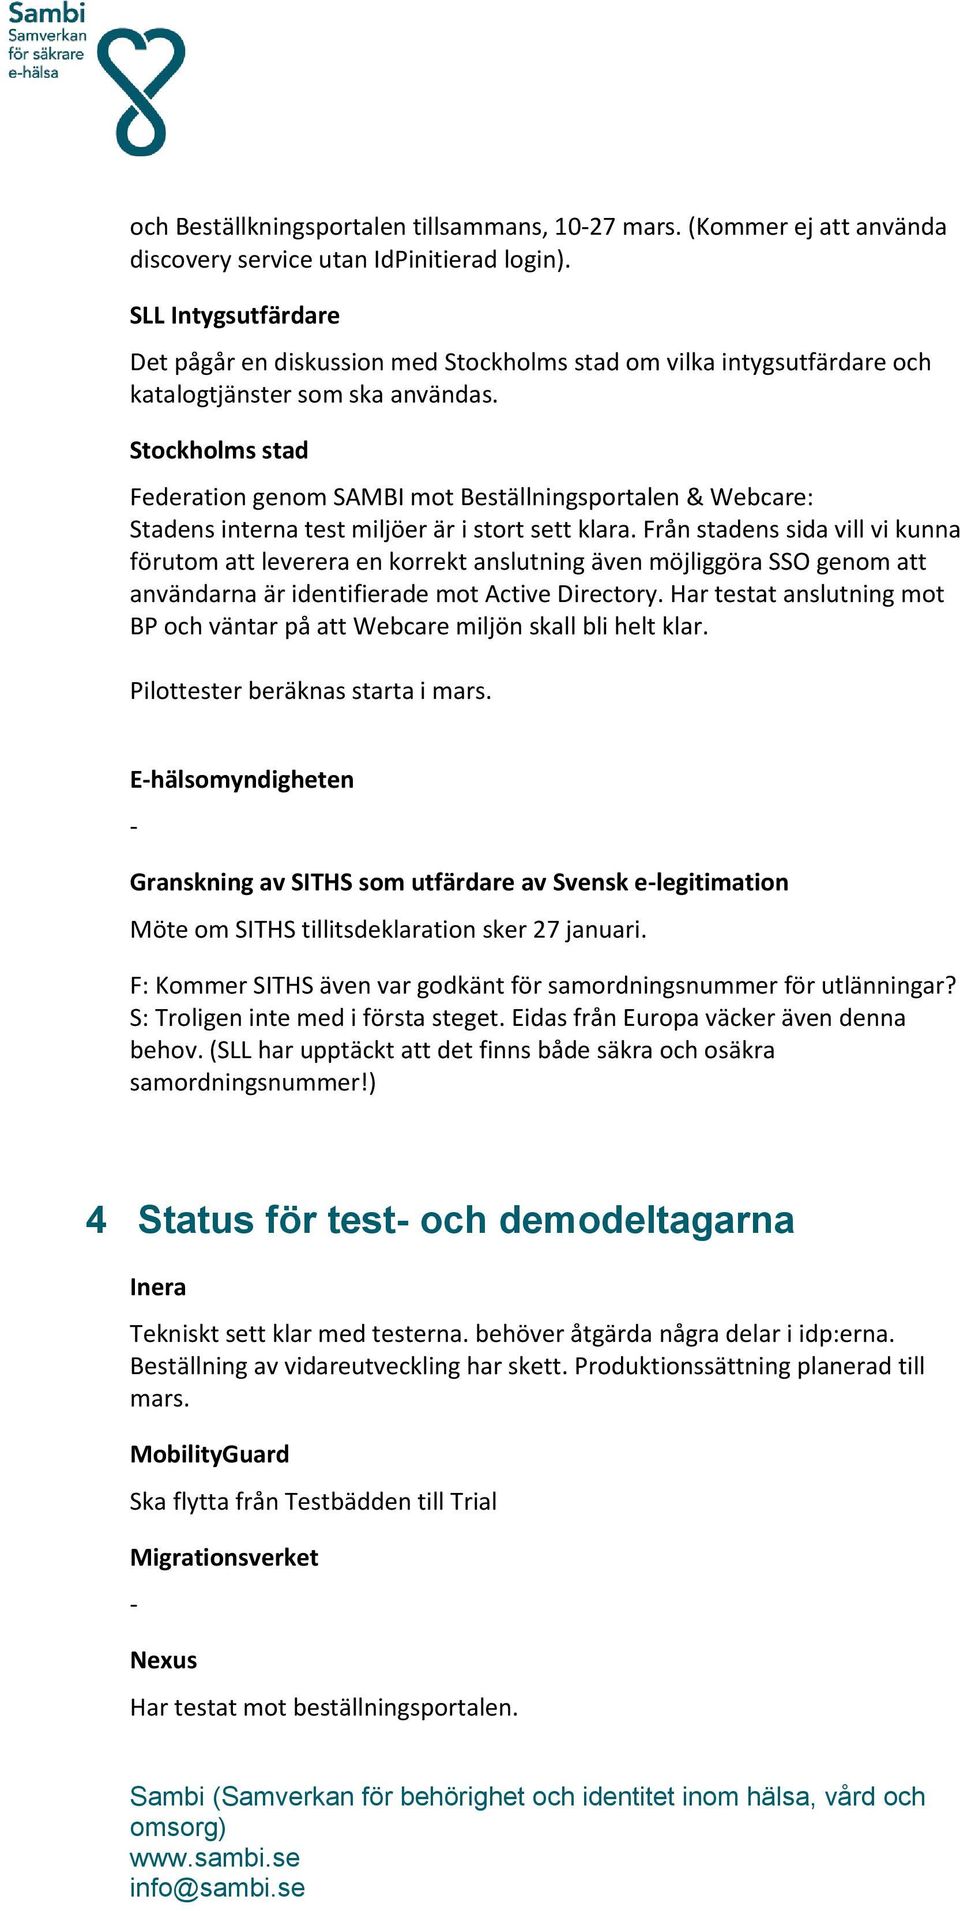 Stockholms stad Federation genom SAMBI mot Beställningsportalen & Webcare: Stadens interna test miljöer är i stort sett klara.